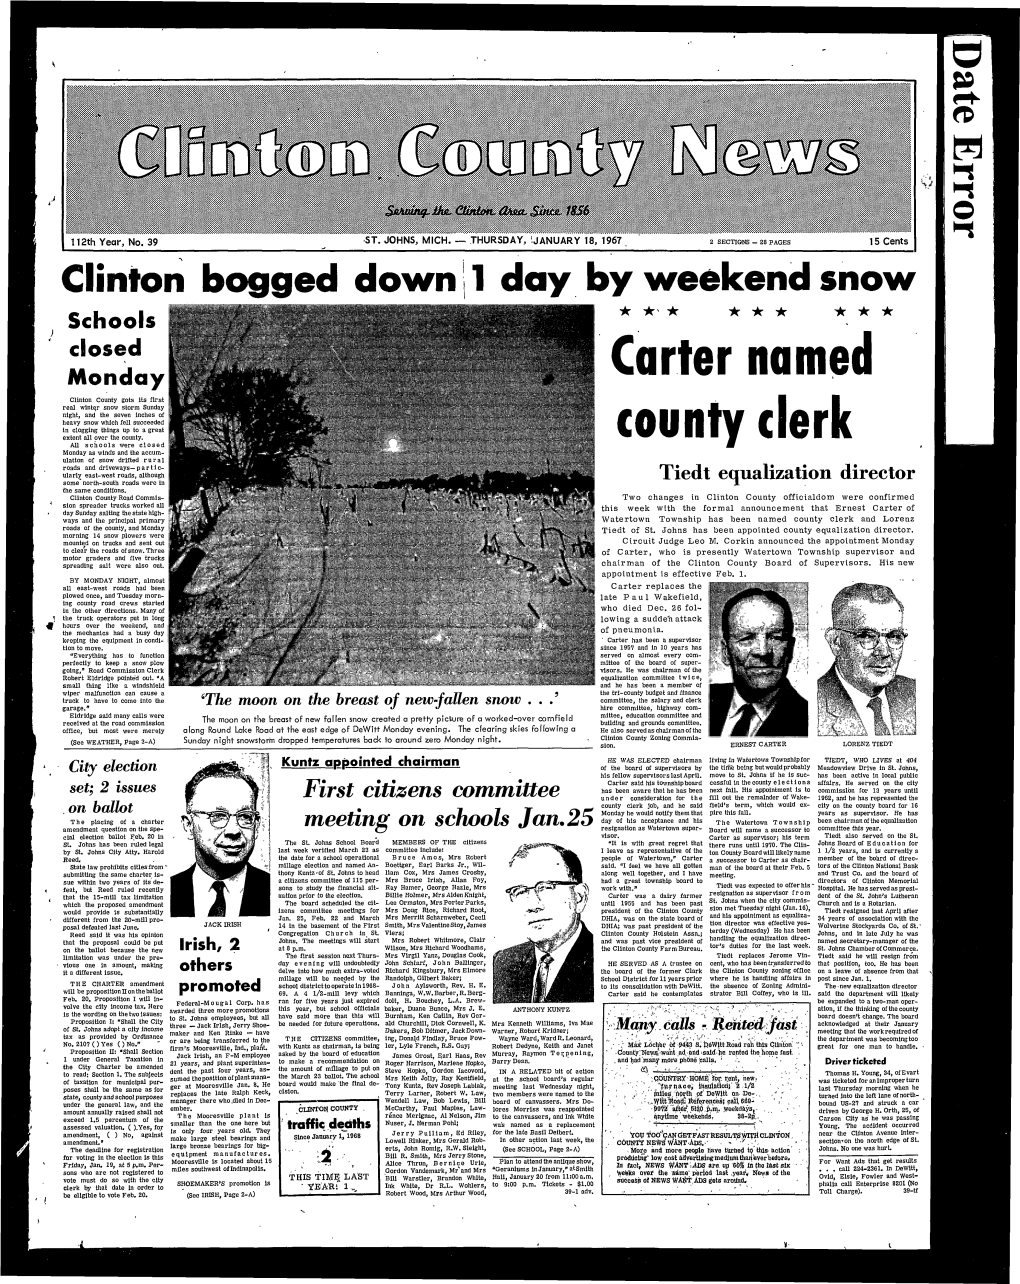 Carter Named County Clerk